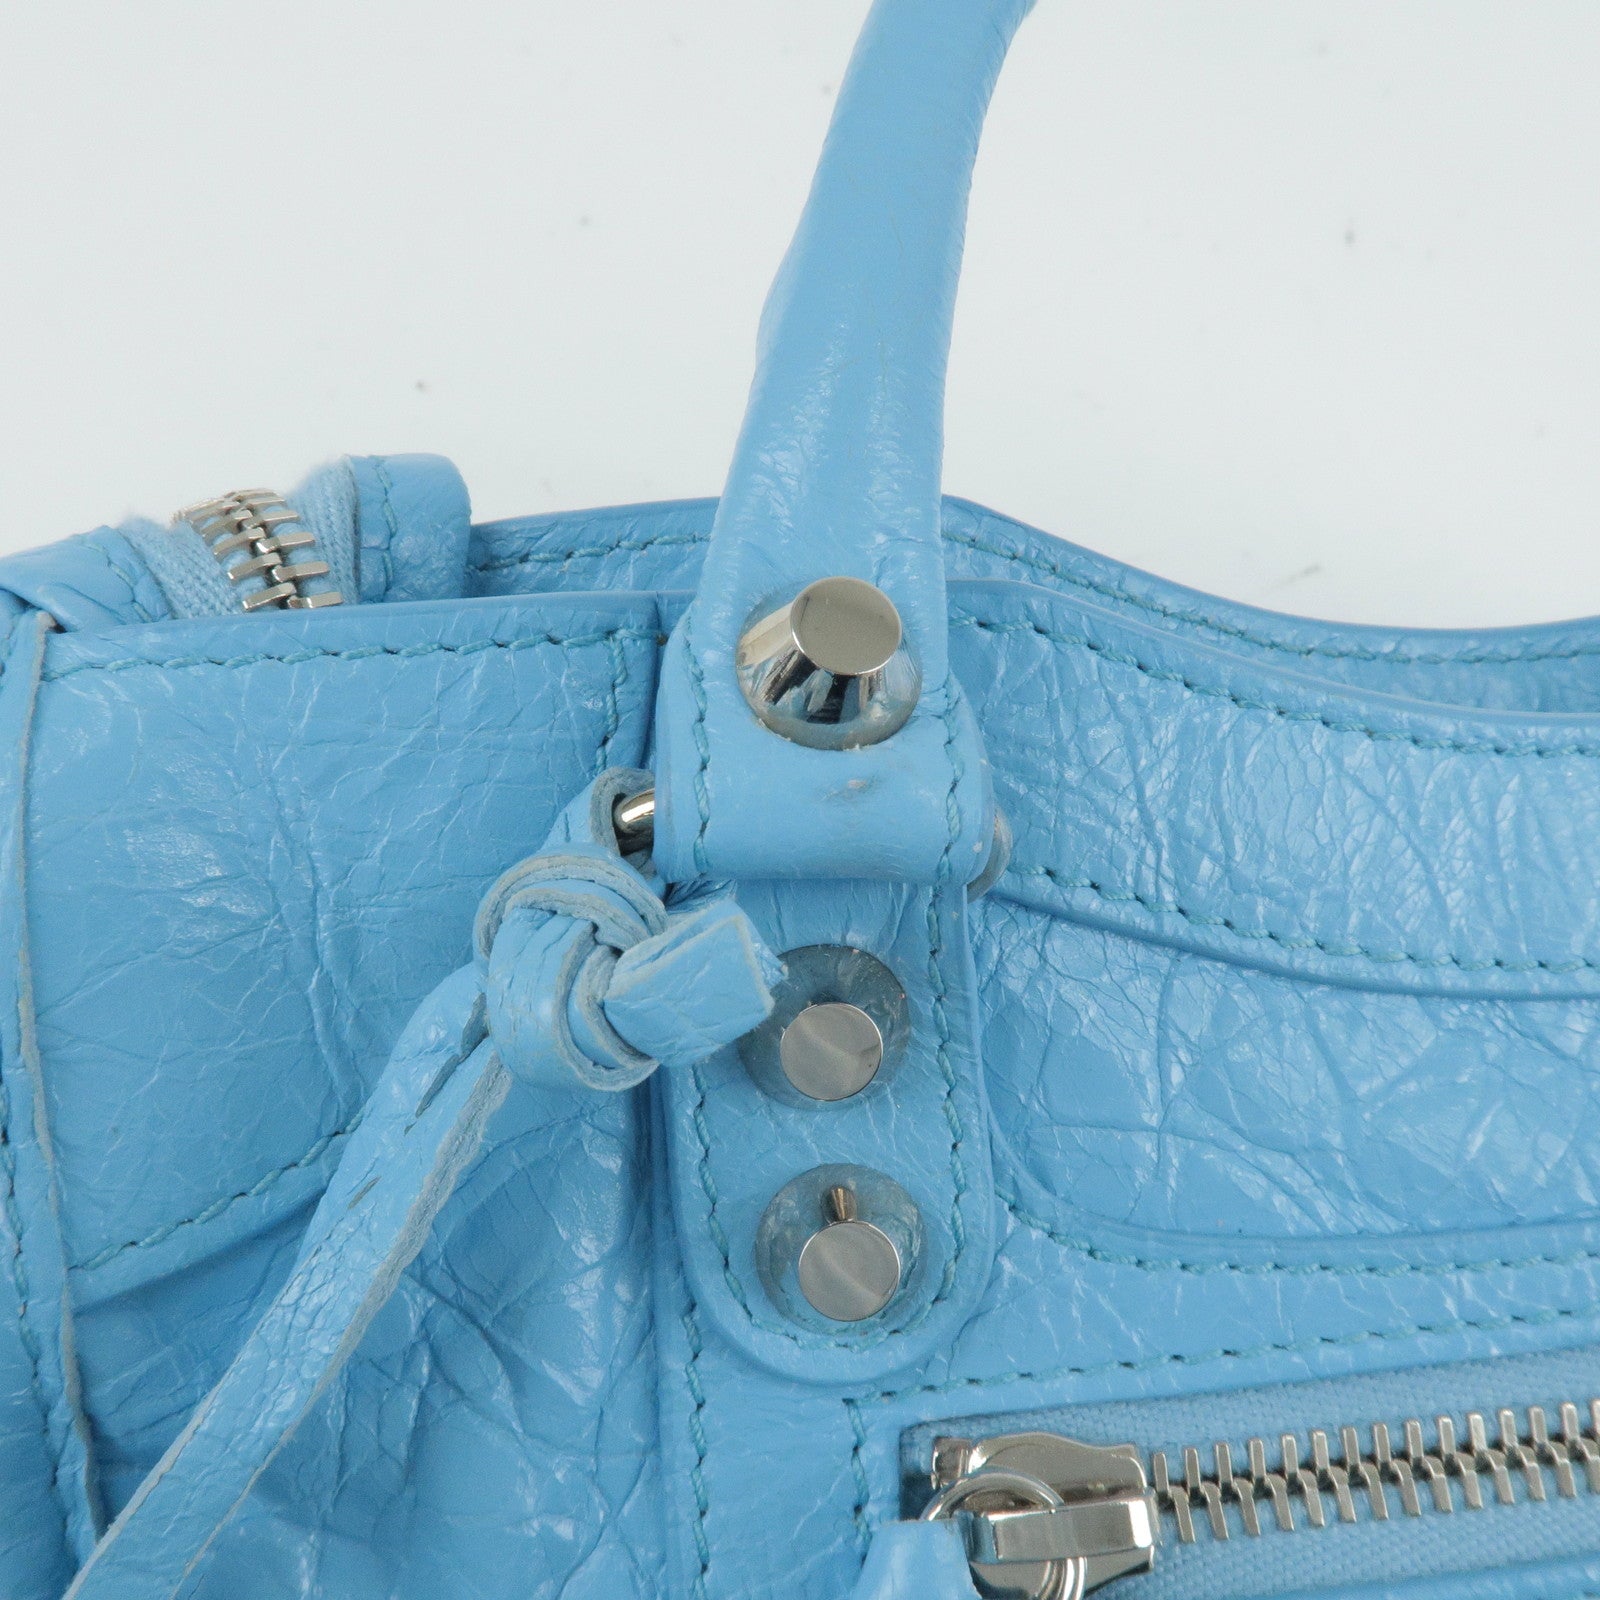 Balenciaga Light Blue Leather Mini Classic City Bag